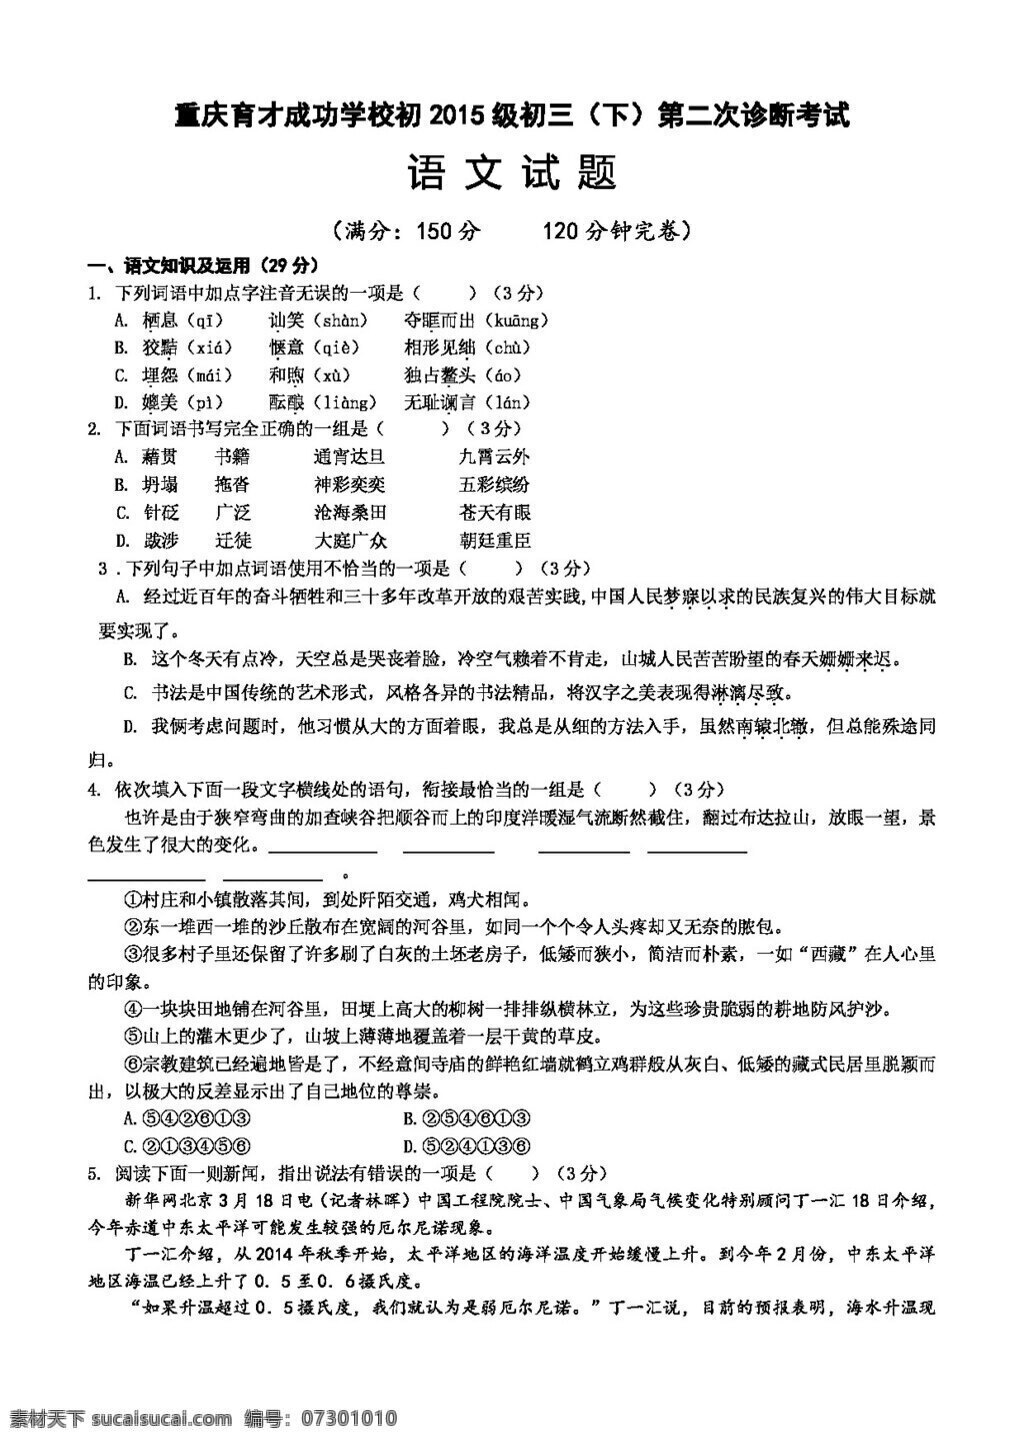 语文 苏 教 版 初 2015 级 学年 二 模 试题 试题试卷 苏教版 中考专区